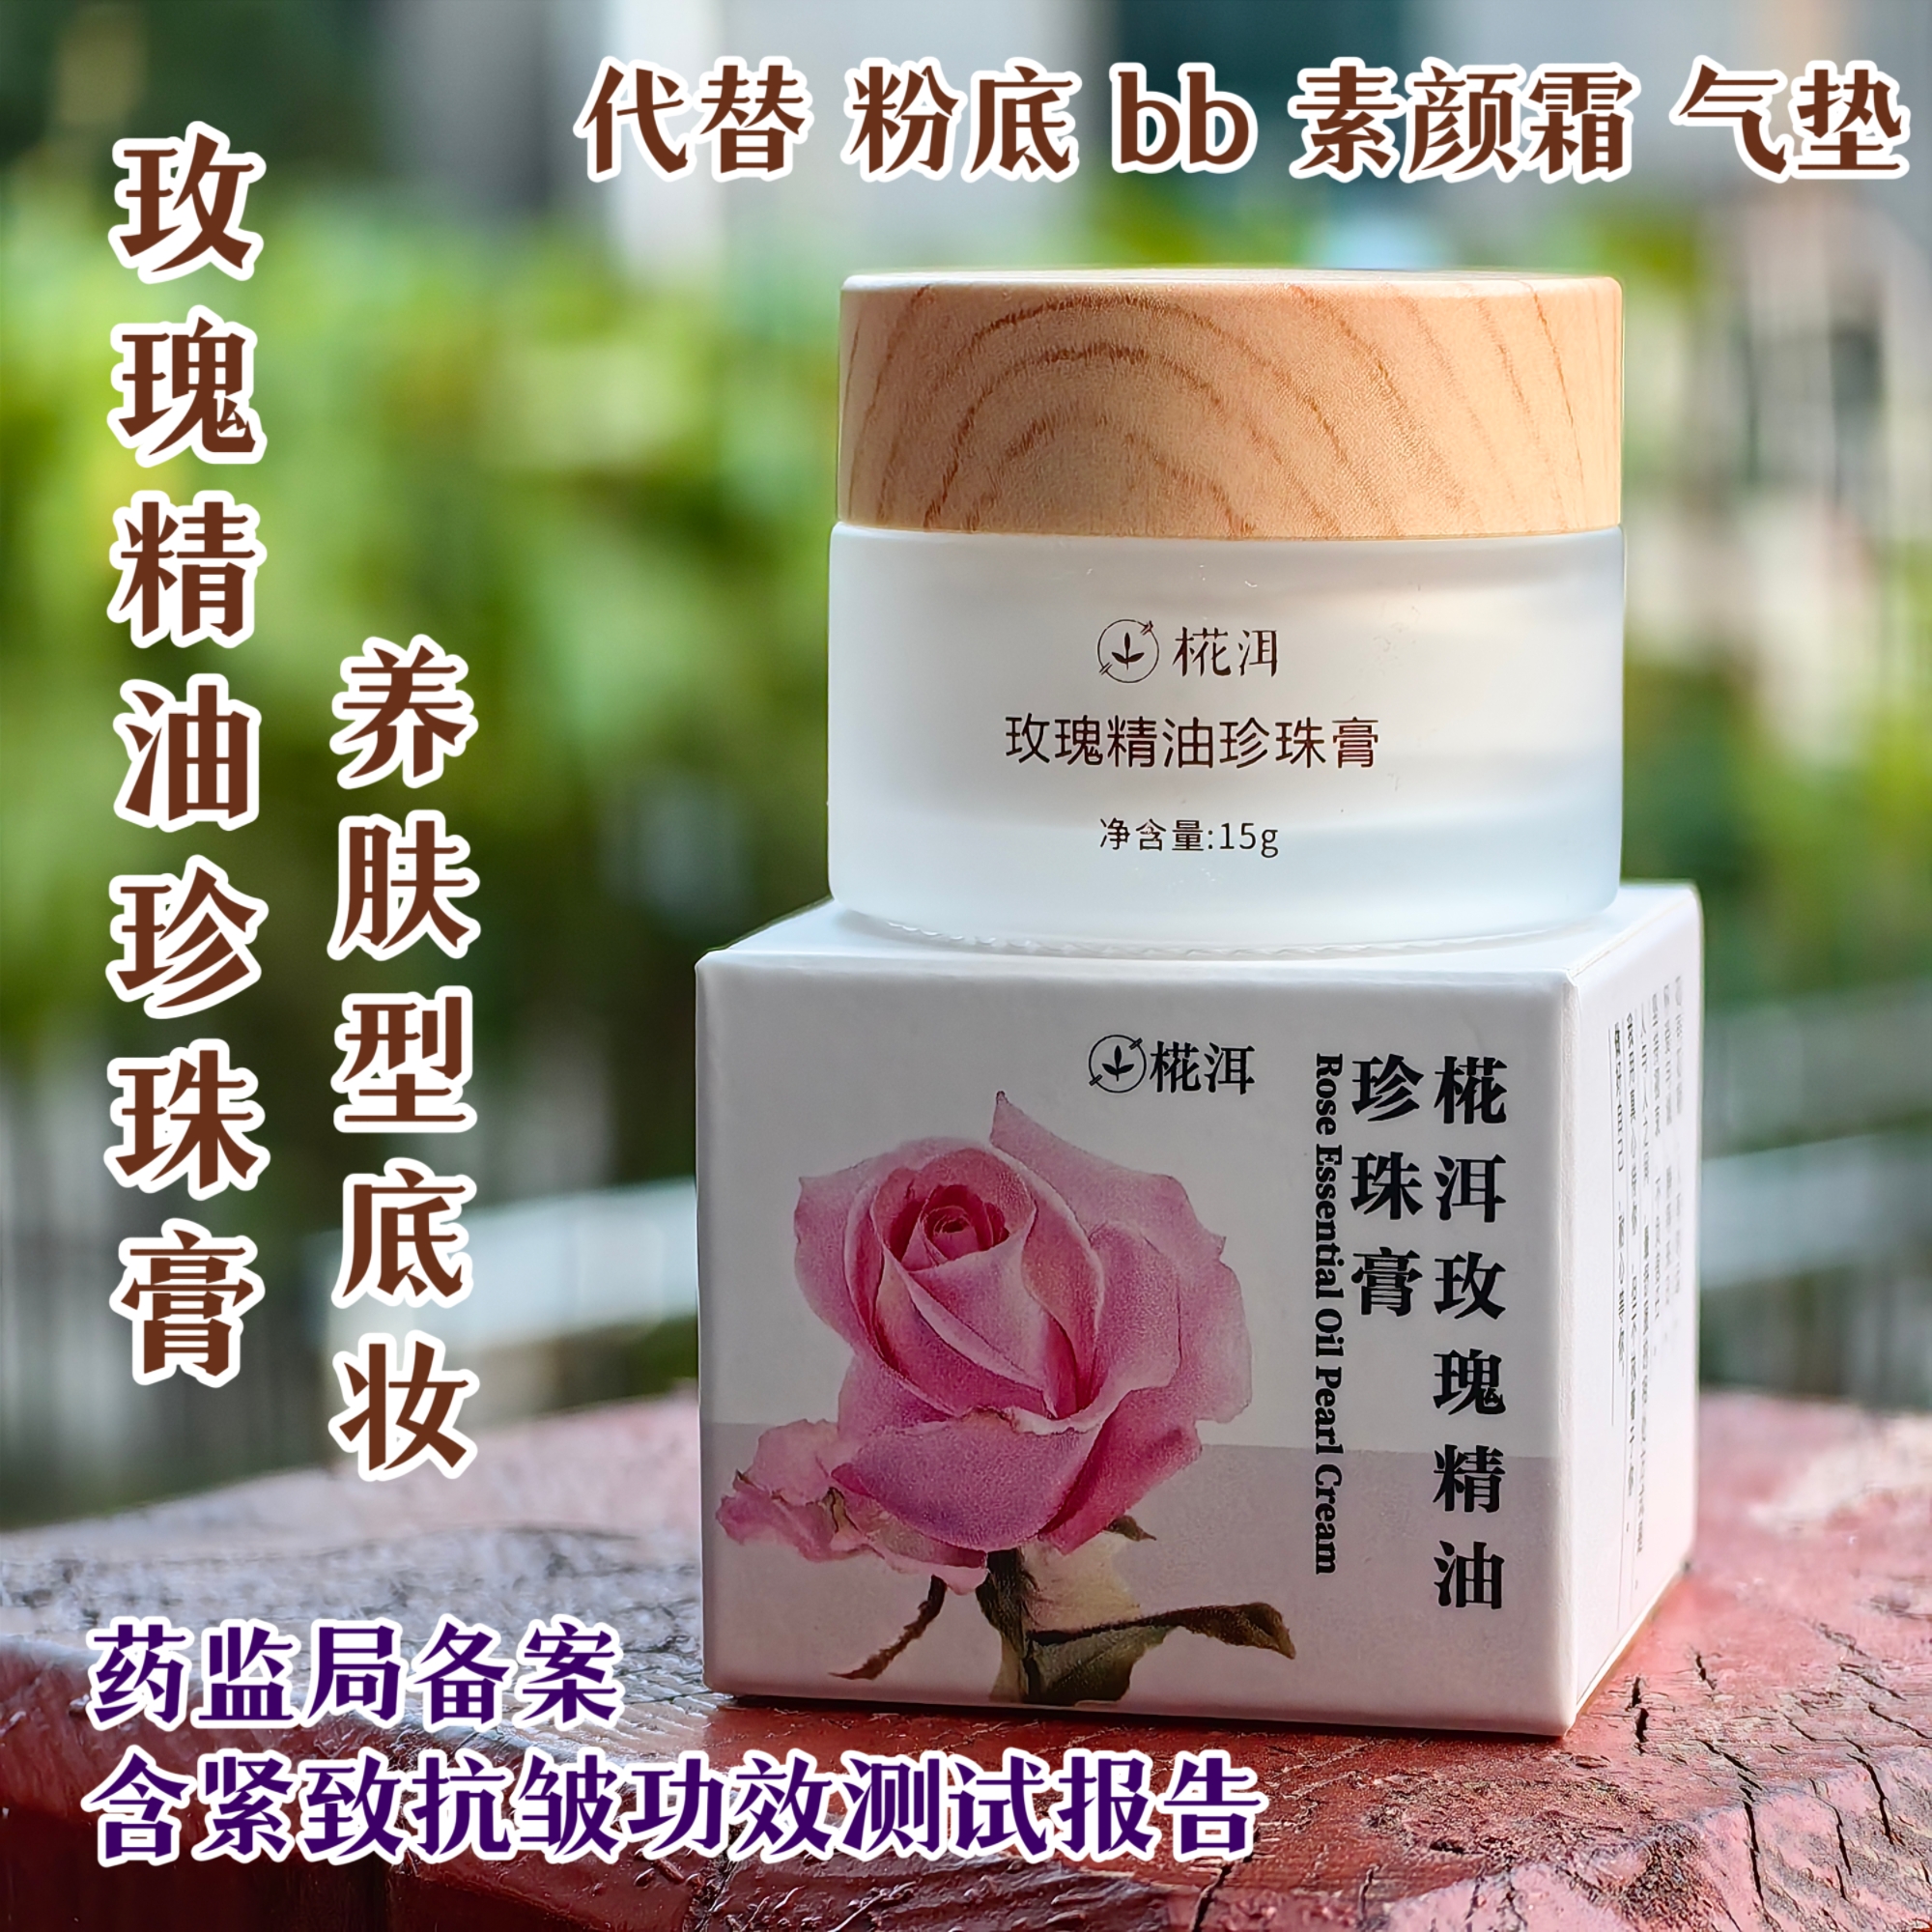 玫瑰精油珍珠膏 养肤型 代替气垫 bb 素颜霜 粉底液 妈生奶油肌